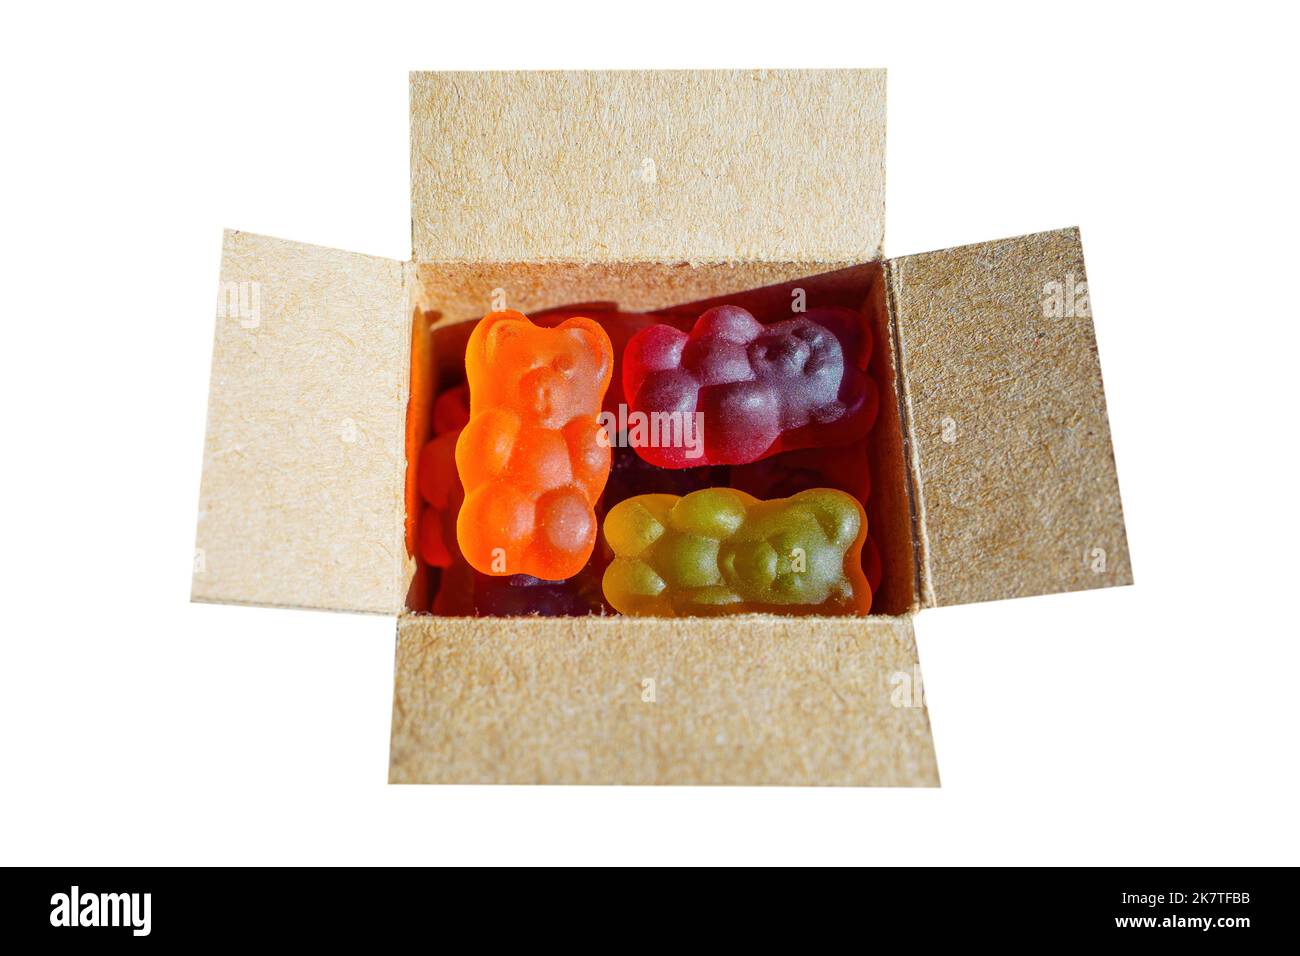 Vue de dessus d'une boîte d'expédition miniature pleine de gite ours colorés isolés sur fond blanc. Fournitures créatives pour la boutique de bonbons. Banque D'Images